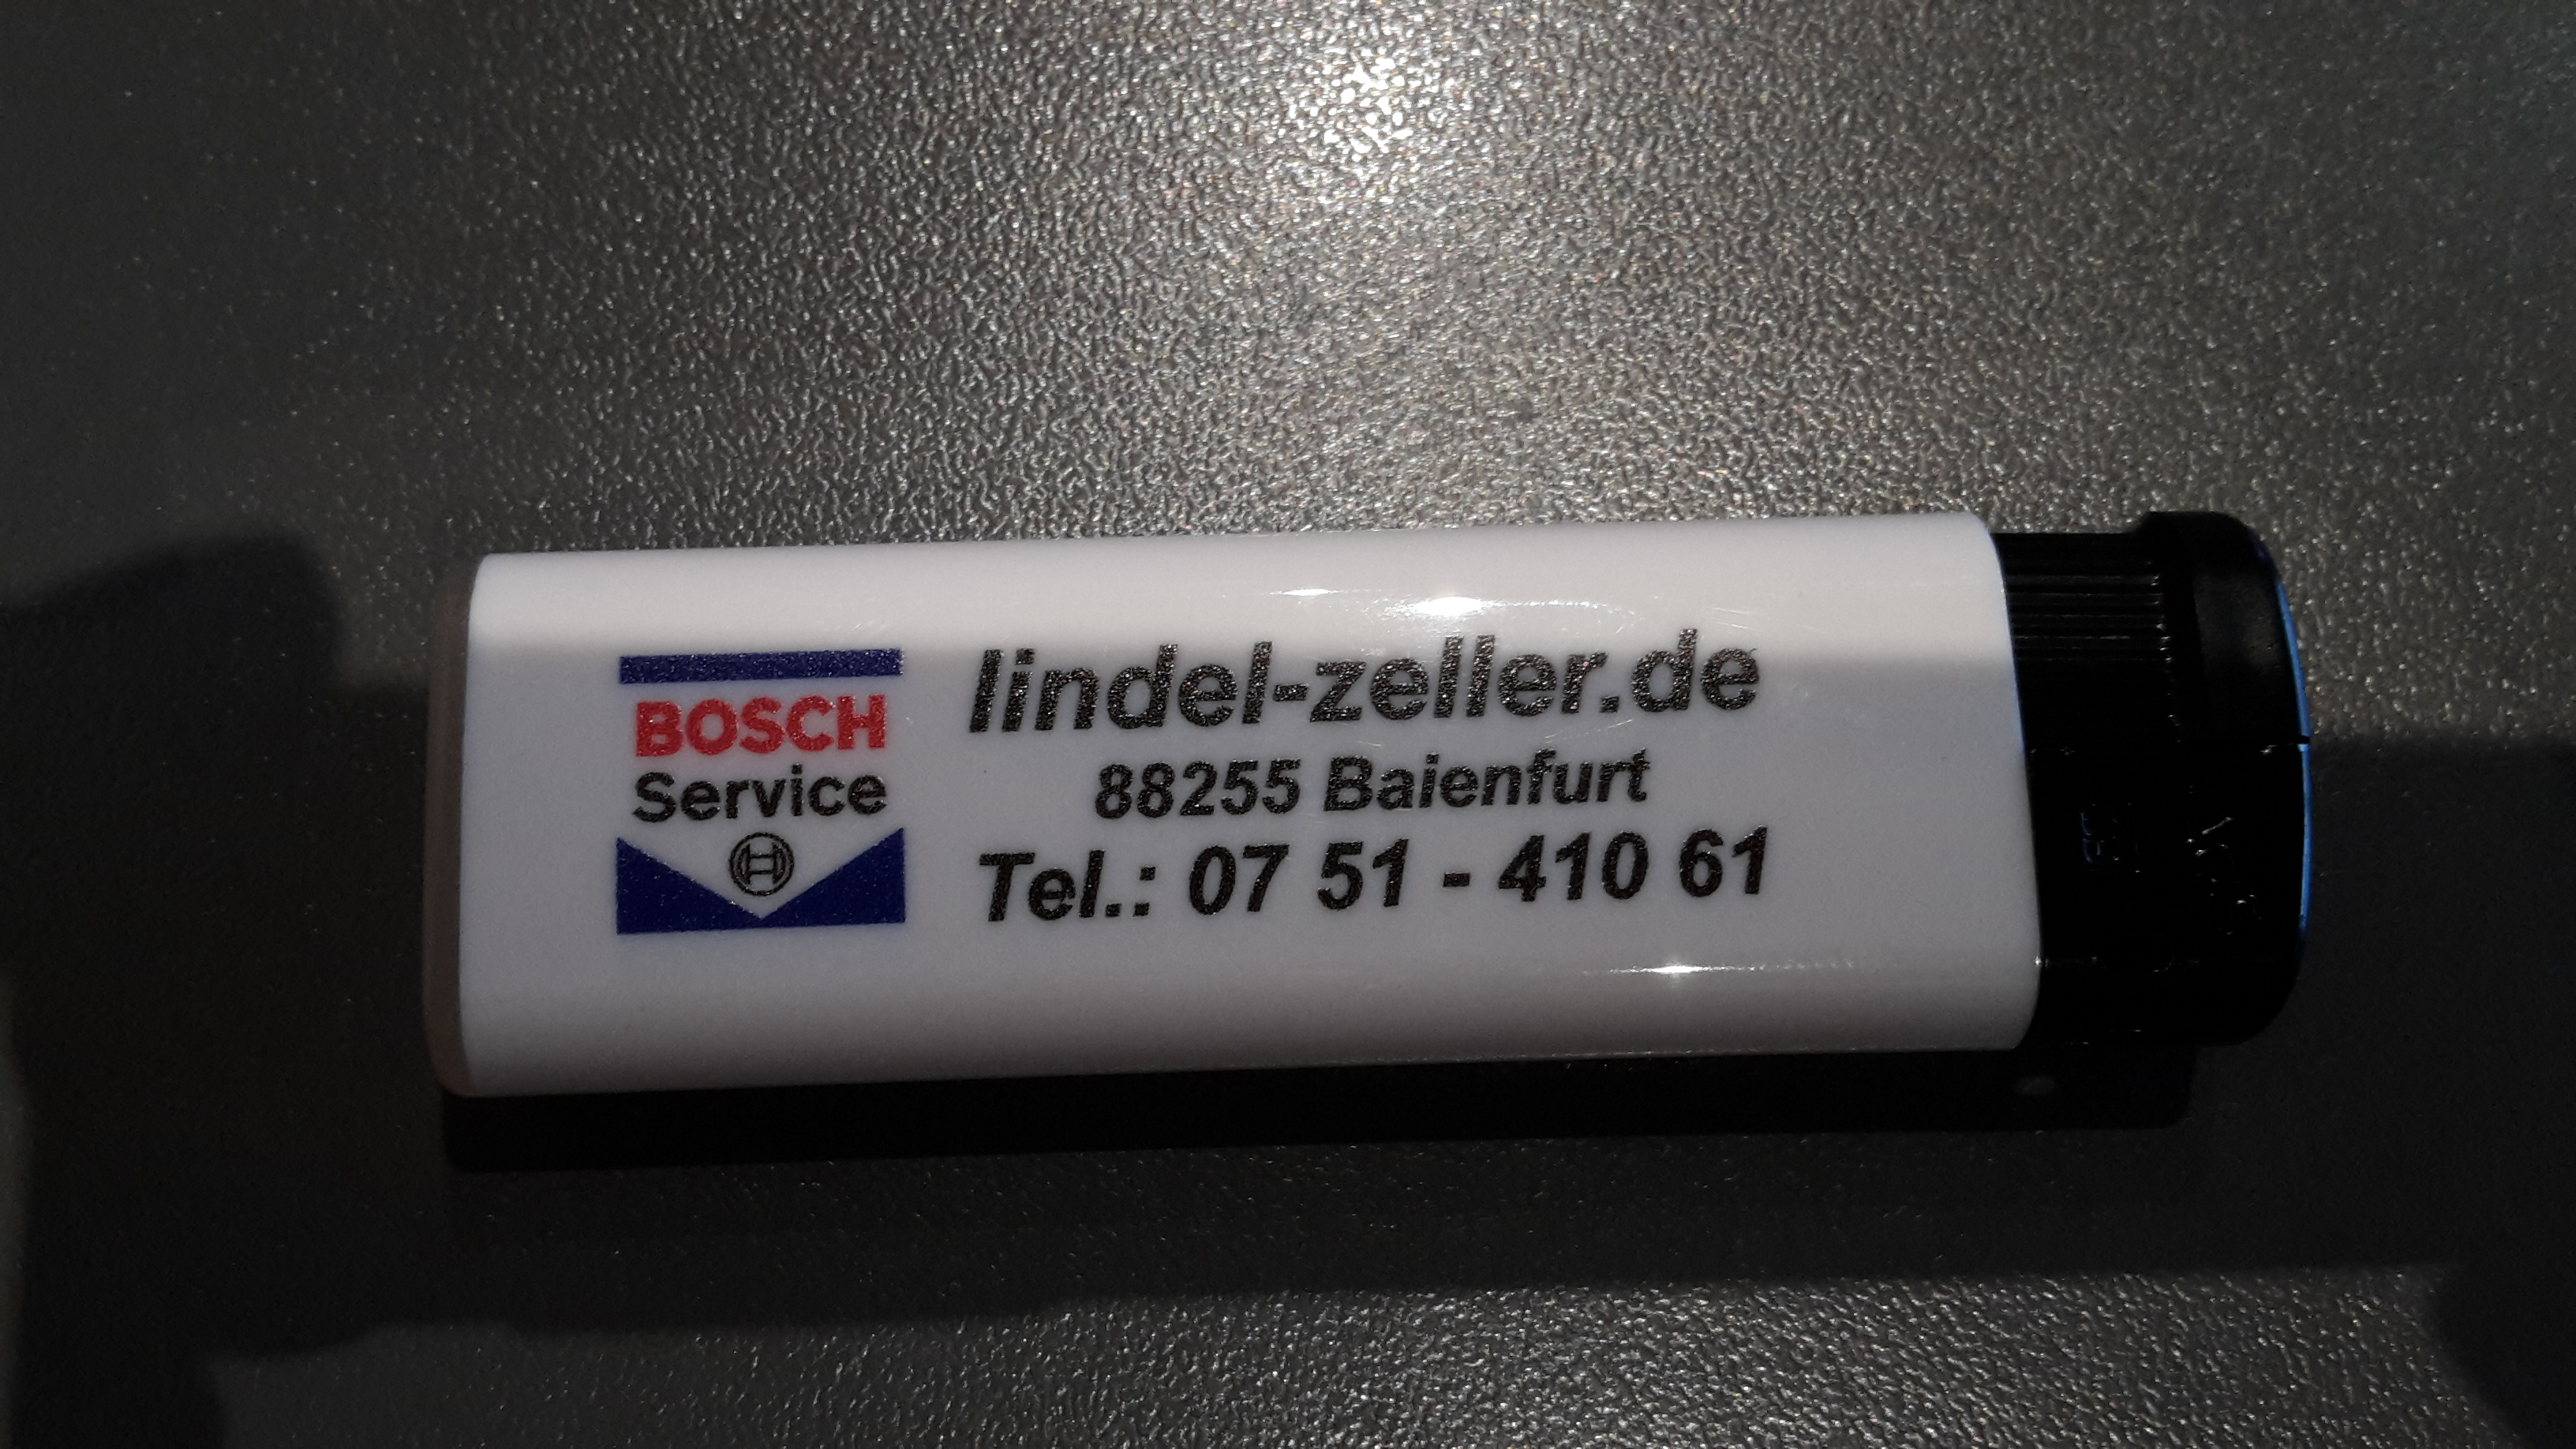 Bild 3 Bosch-Service Lindel Zeller GmbH in Baienfurt